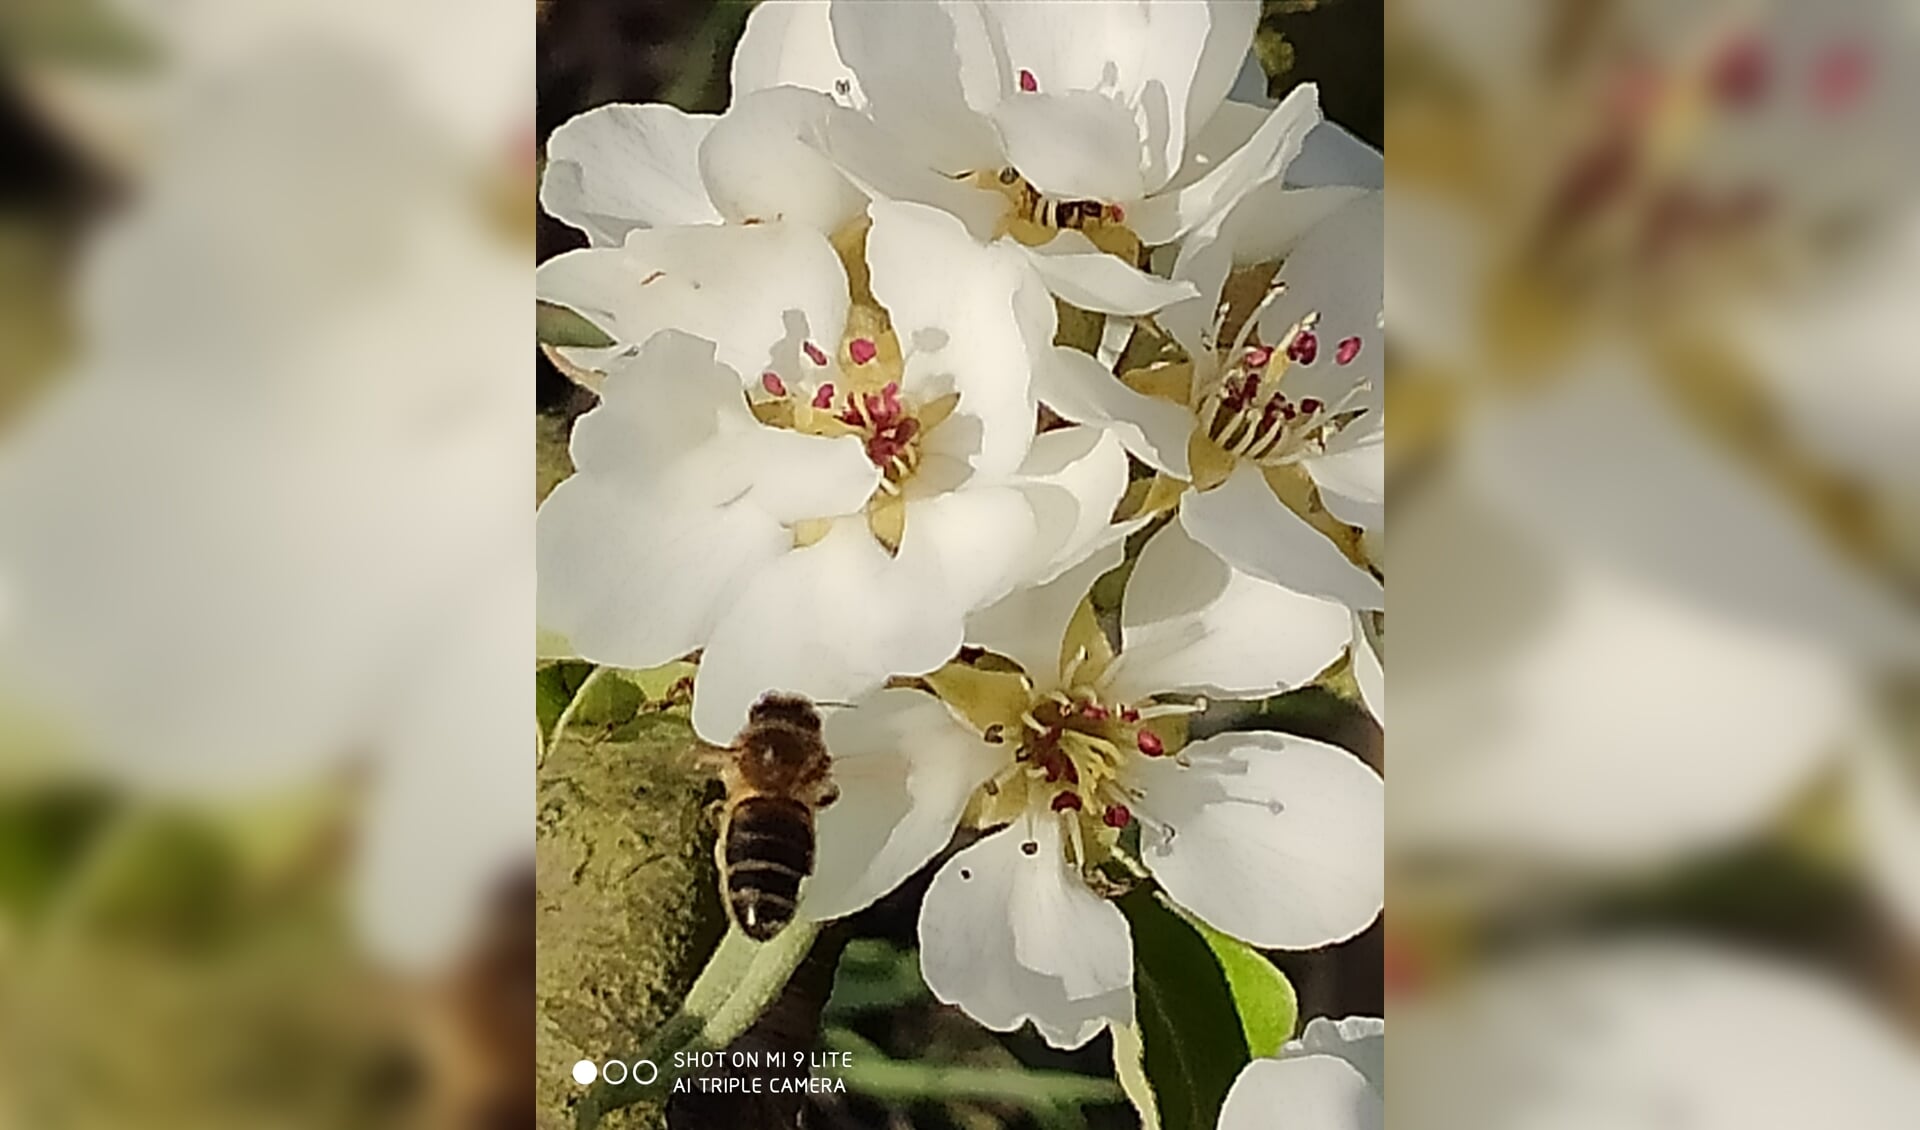 Bijen bestuiven fruitbomen in de Betuwe. 